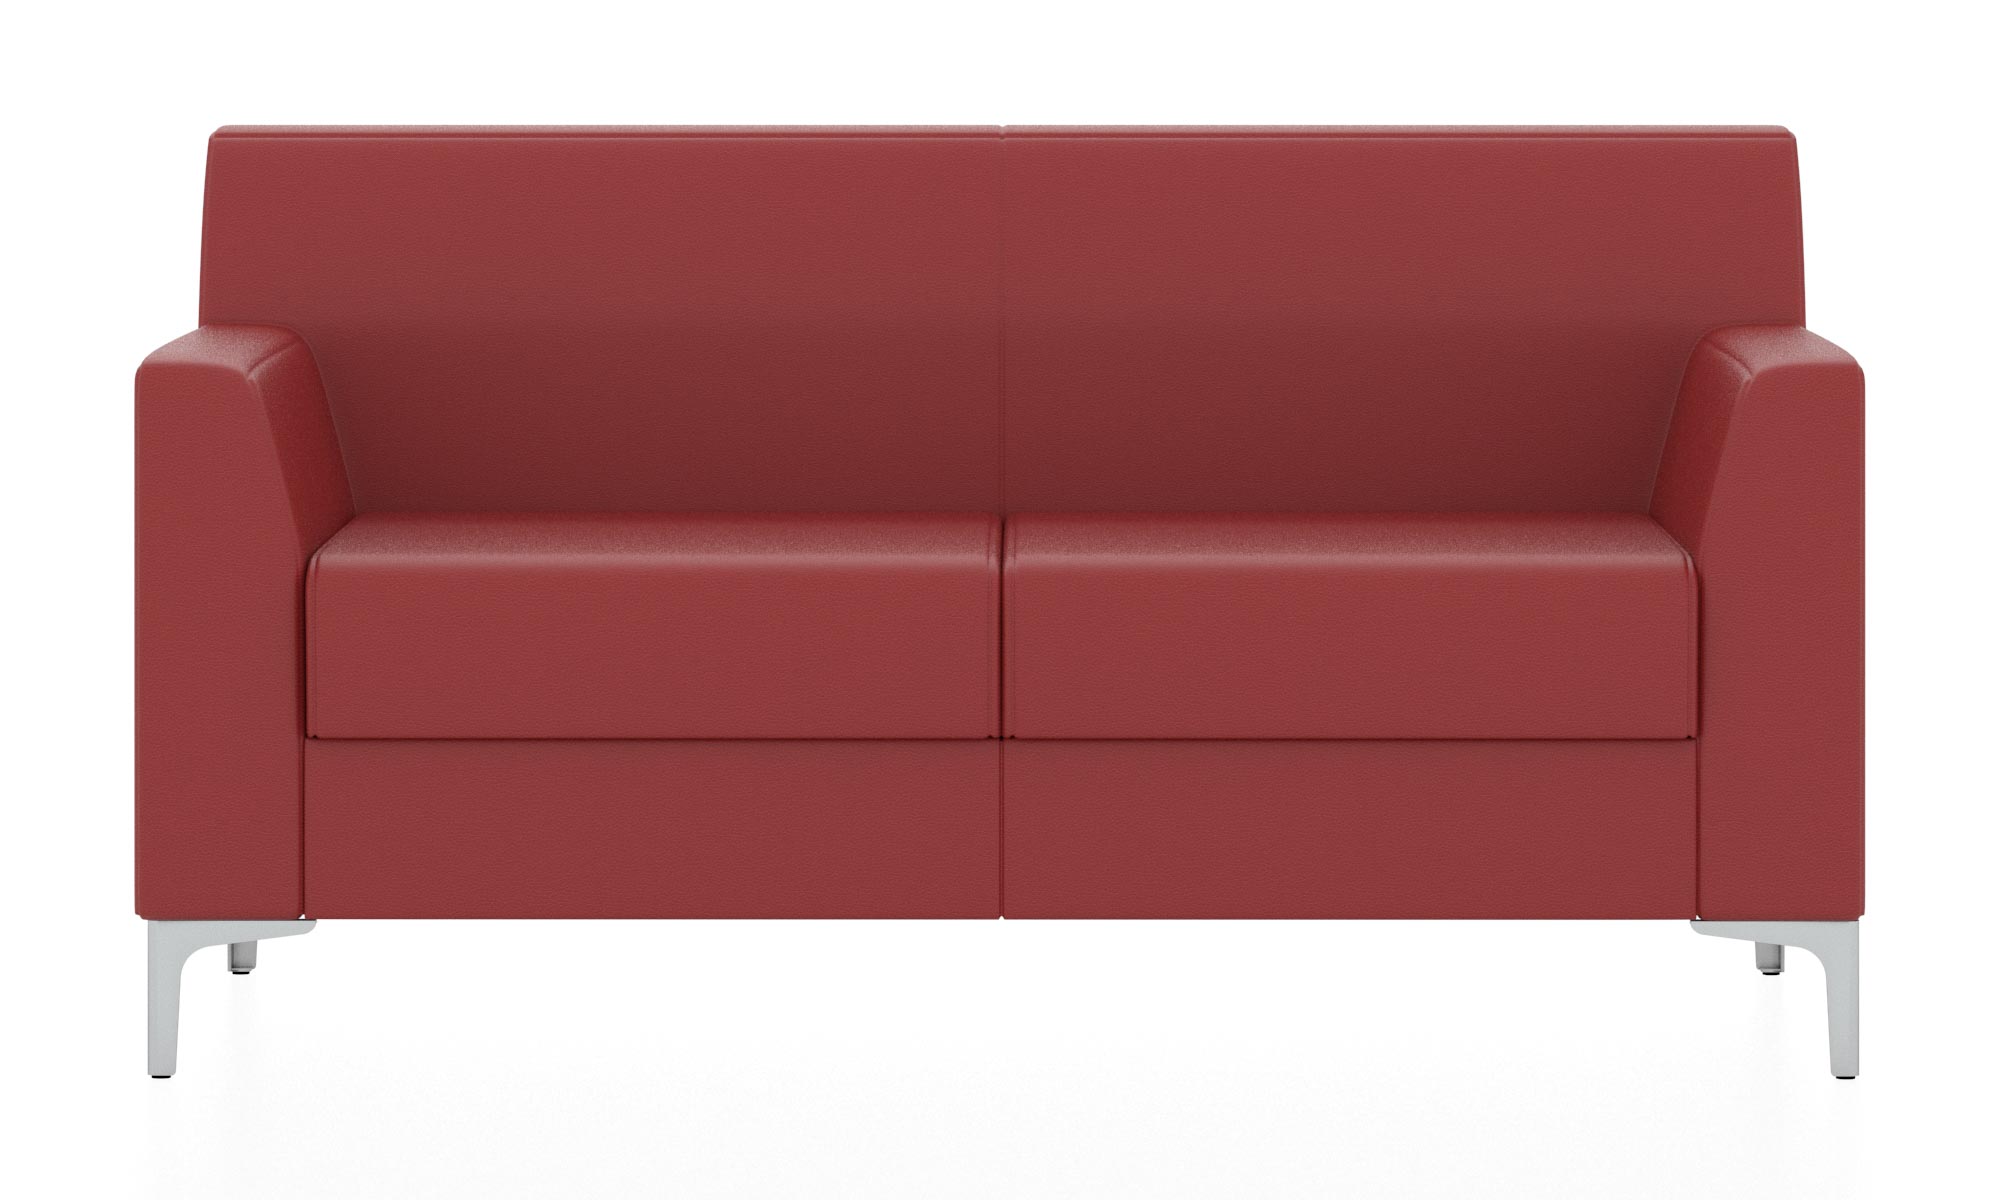 Классический двухместный диван. Обивка из кожзама красного цвета (euroline 960)